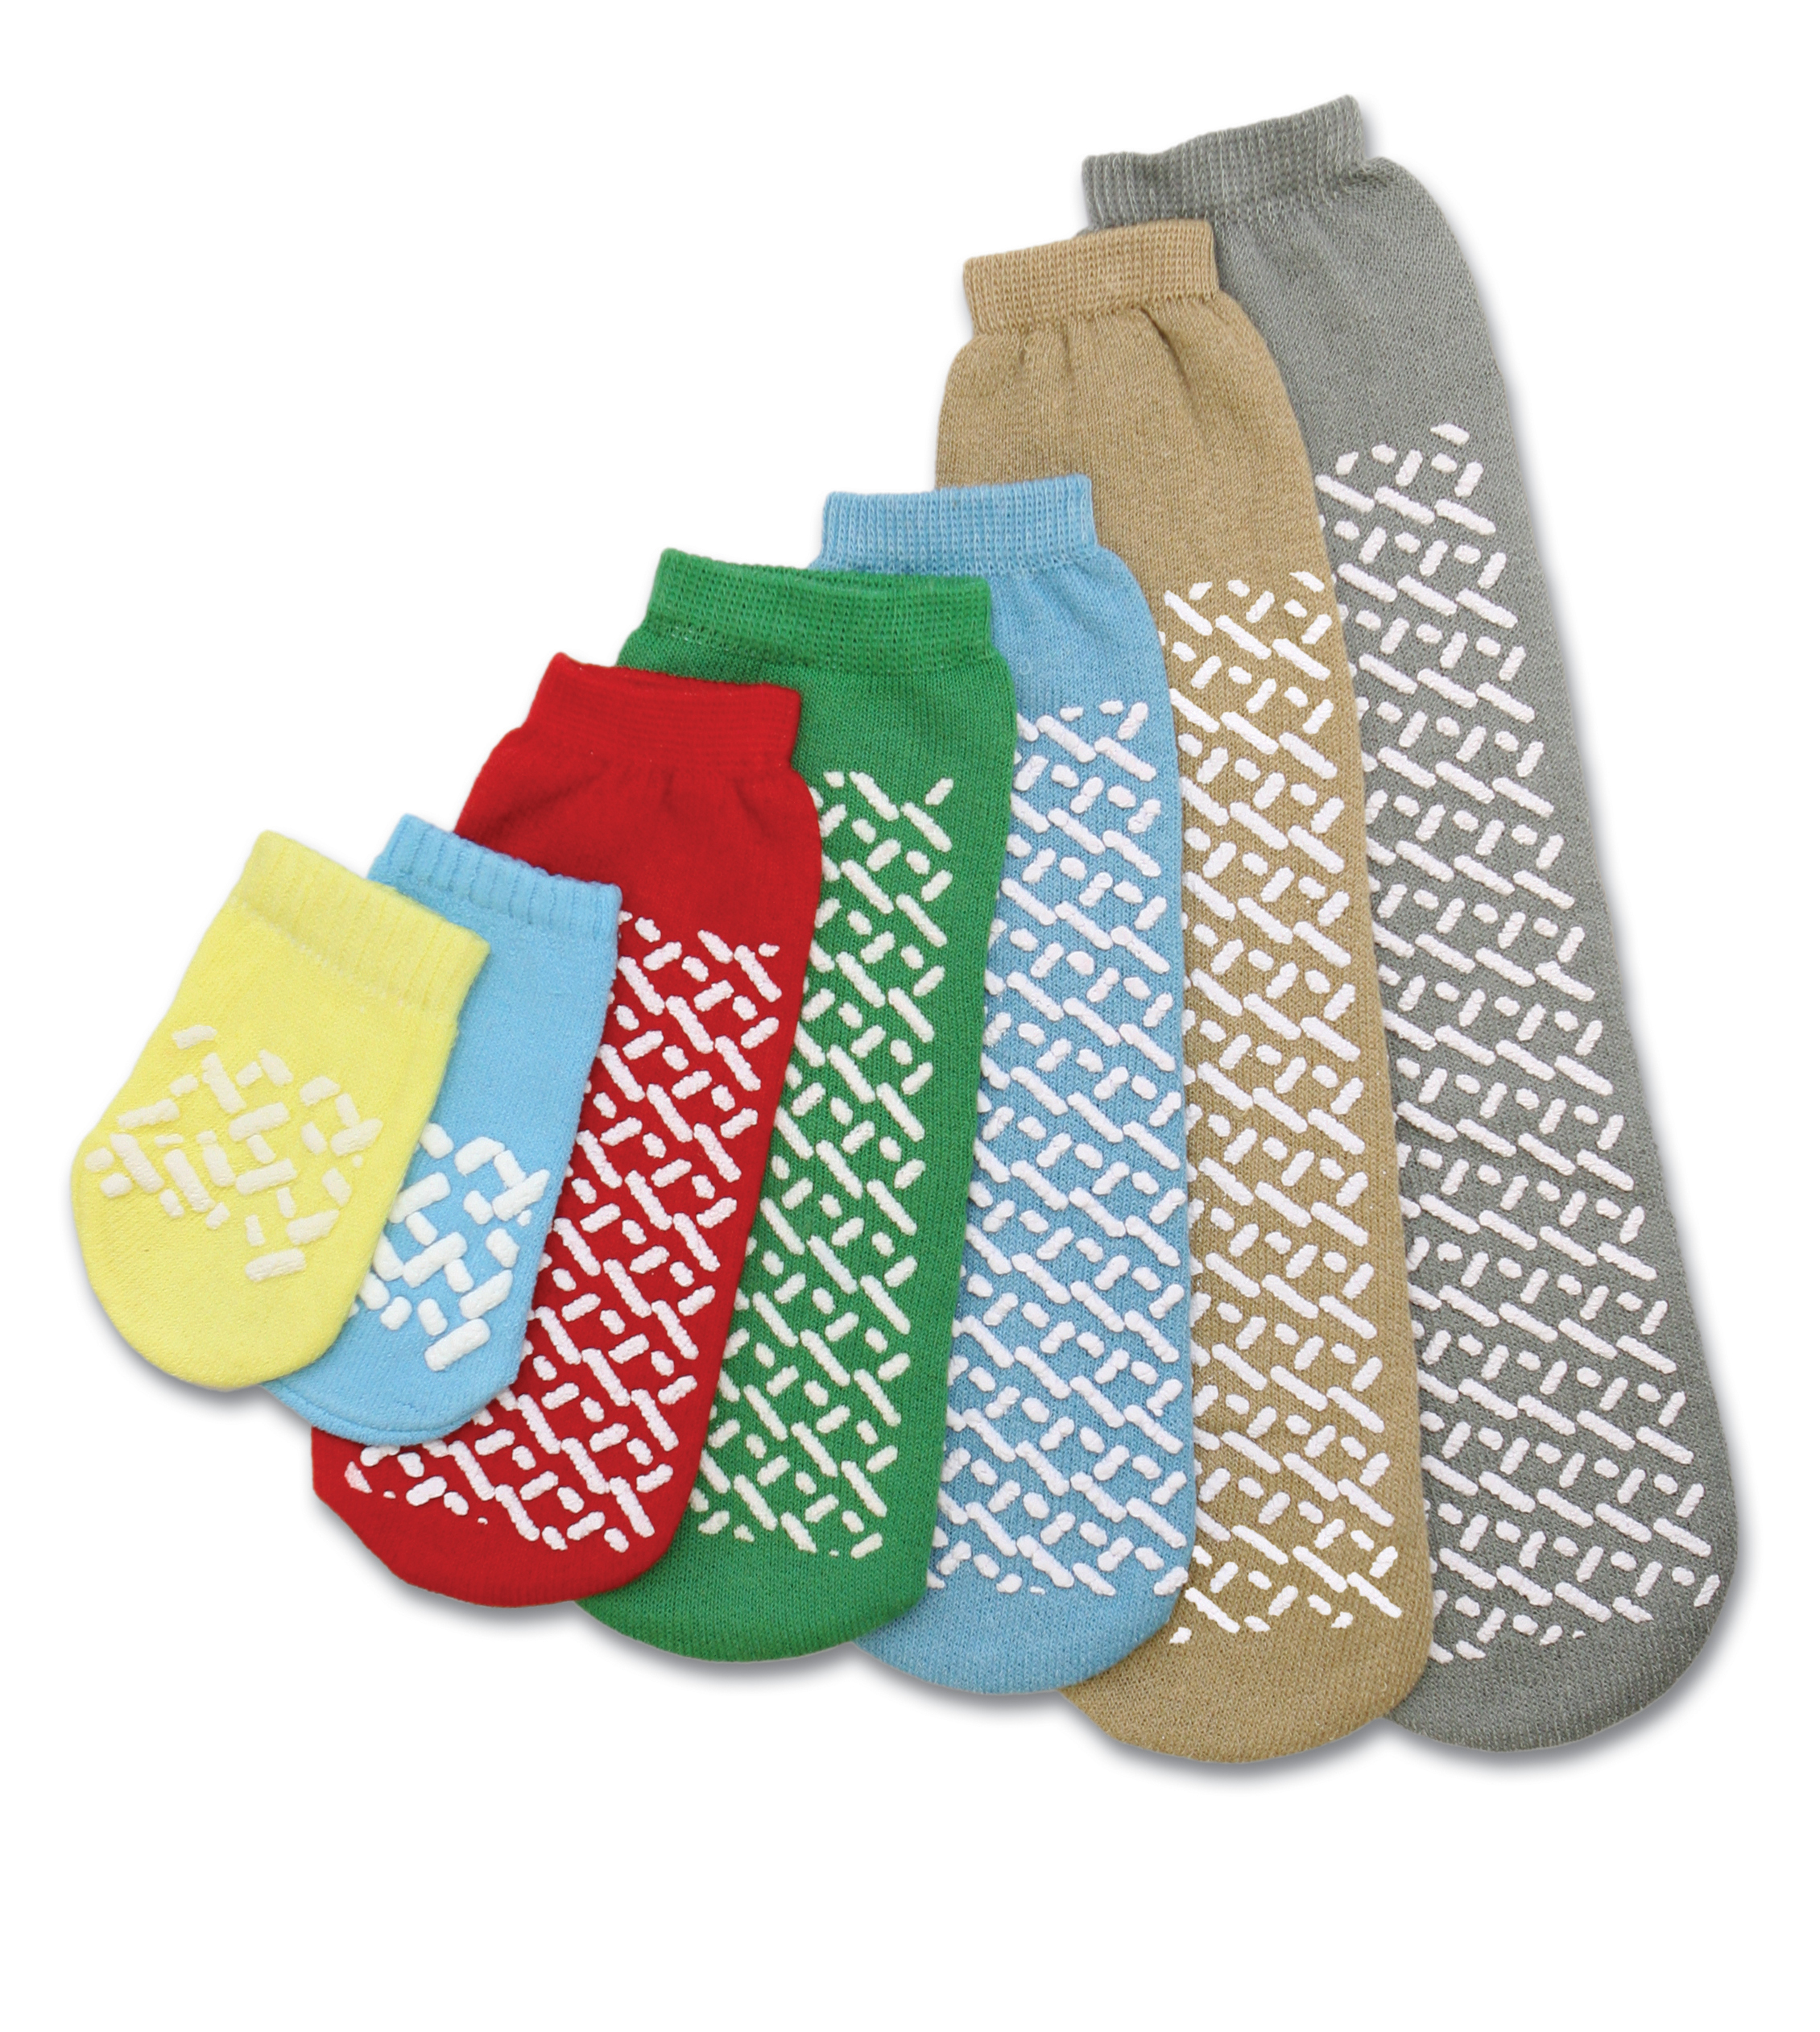 Discover more than 158 grippa slipper socks - noithatsi.vn